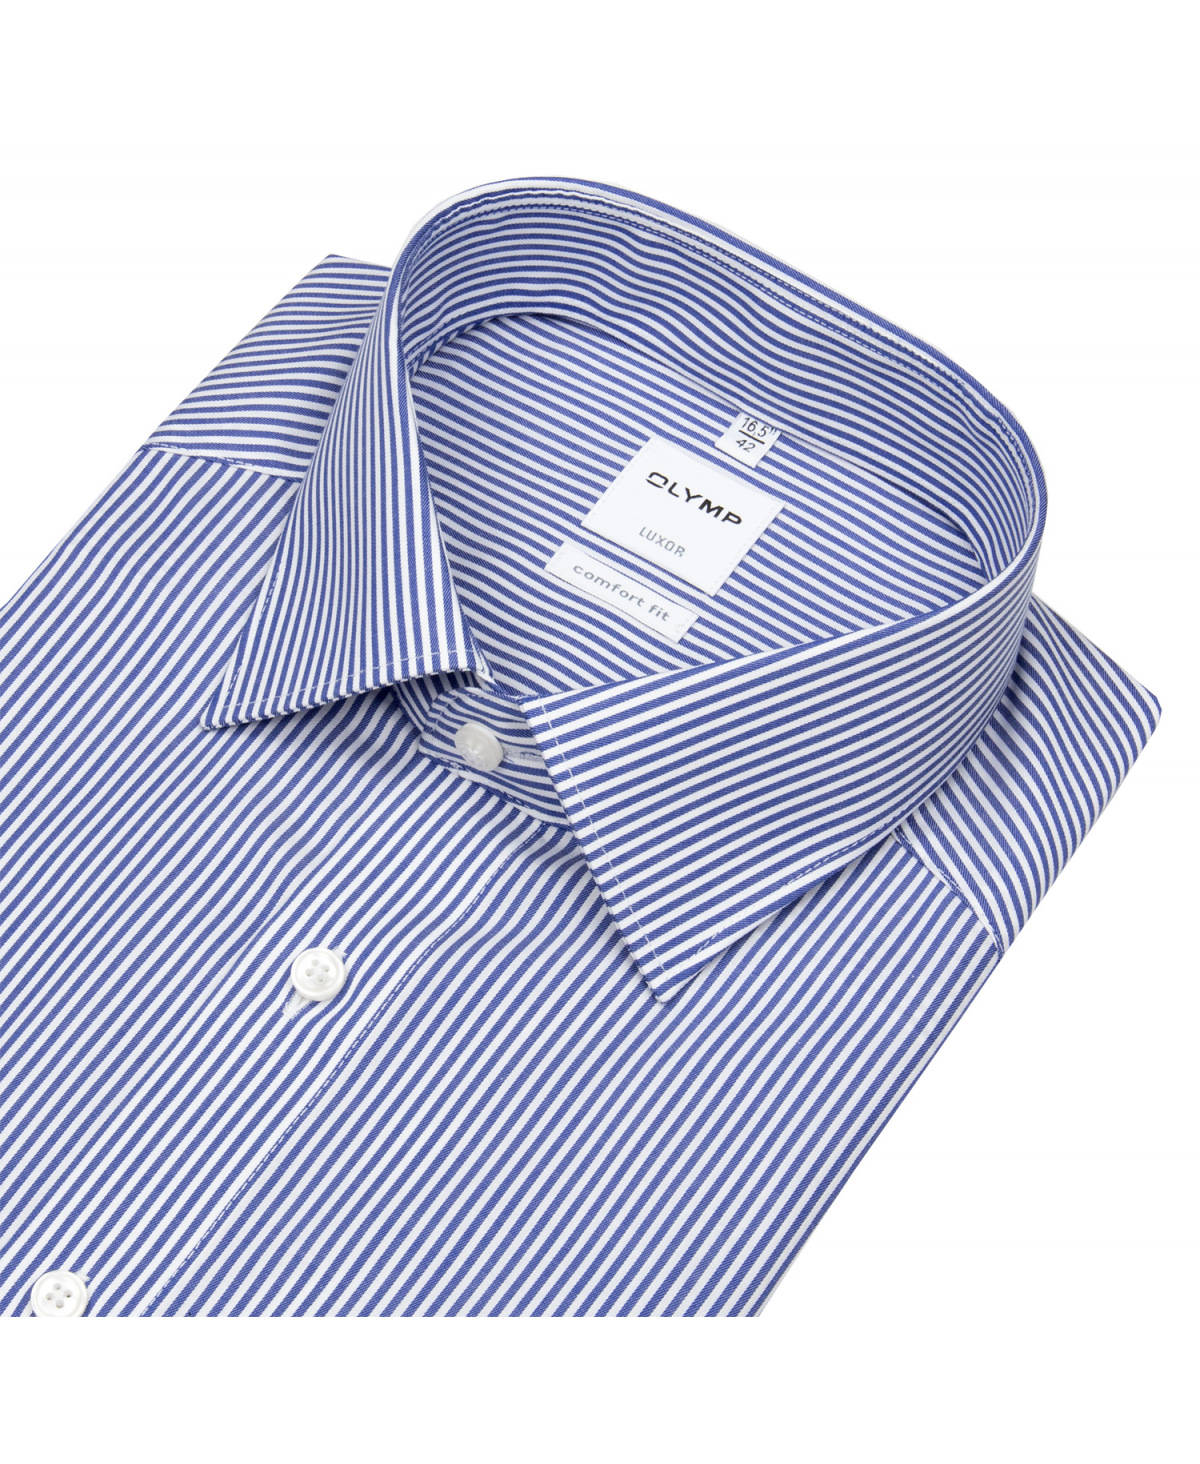 OLYMP Hemd - Luxor - blau Streifen Twill weiß - / Fit Comfort 